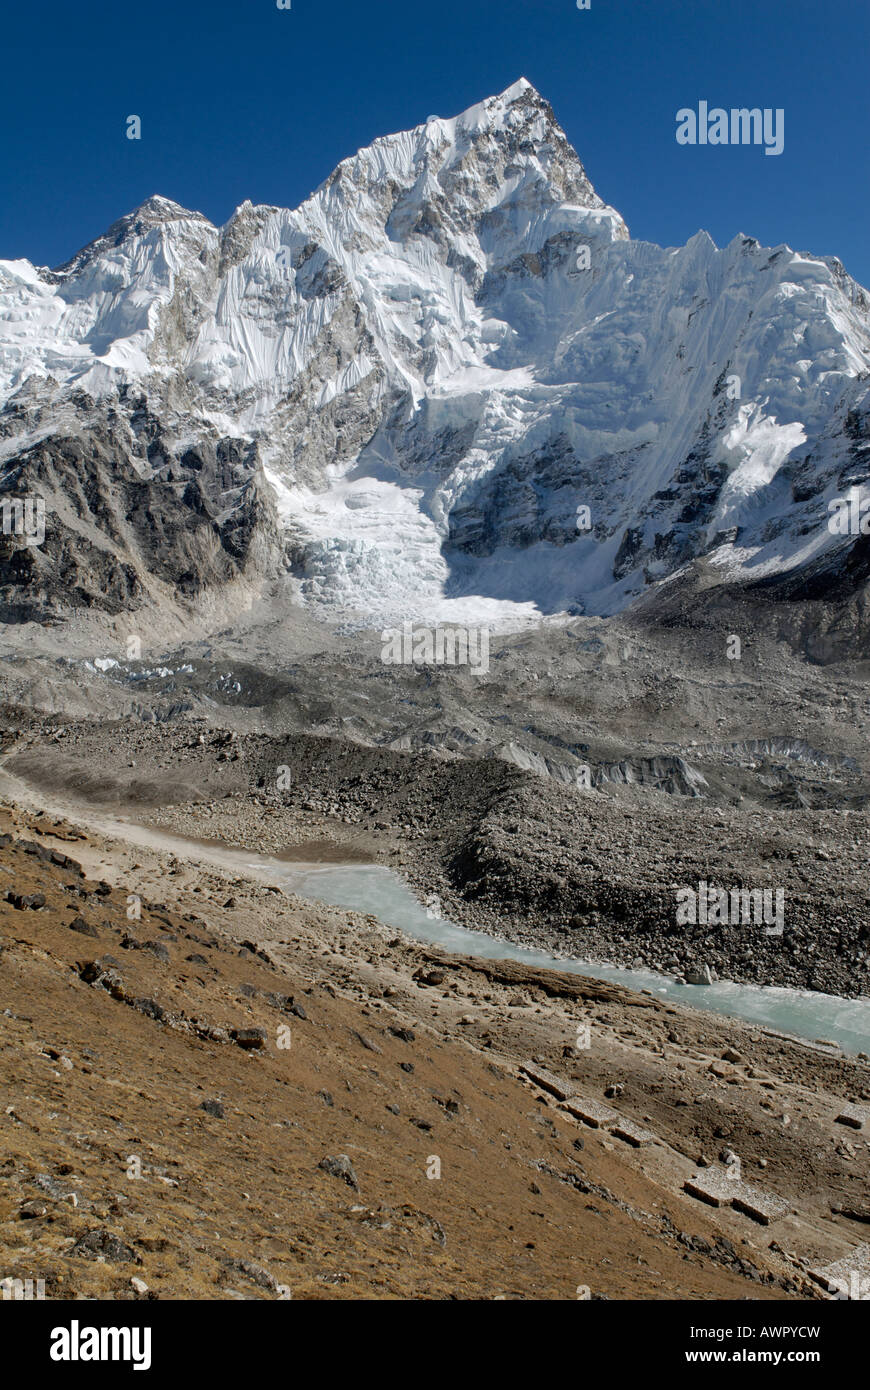 View over Khumbu glacier towards Nuptse (7861), Khumbu Himal, Sagarmatha National Park, Nepal Stock Photo